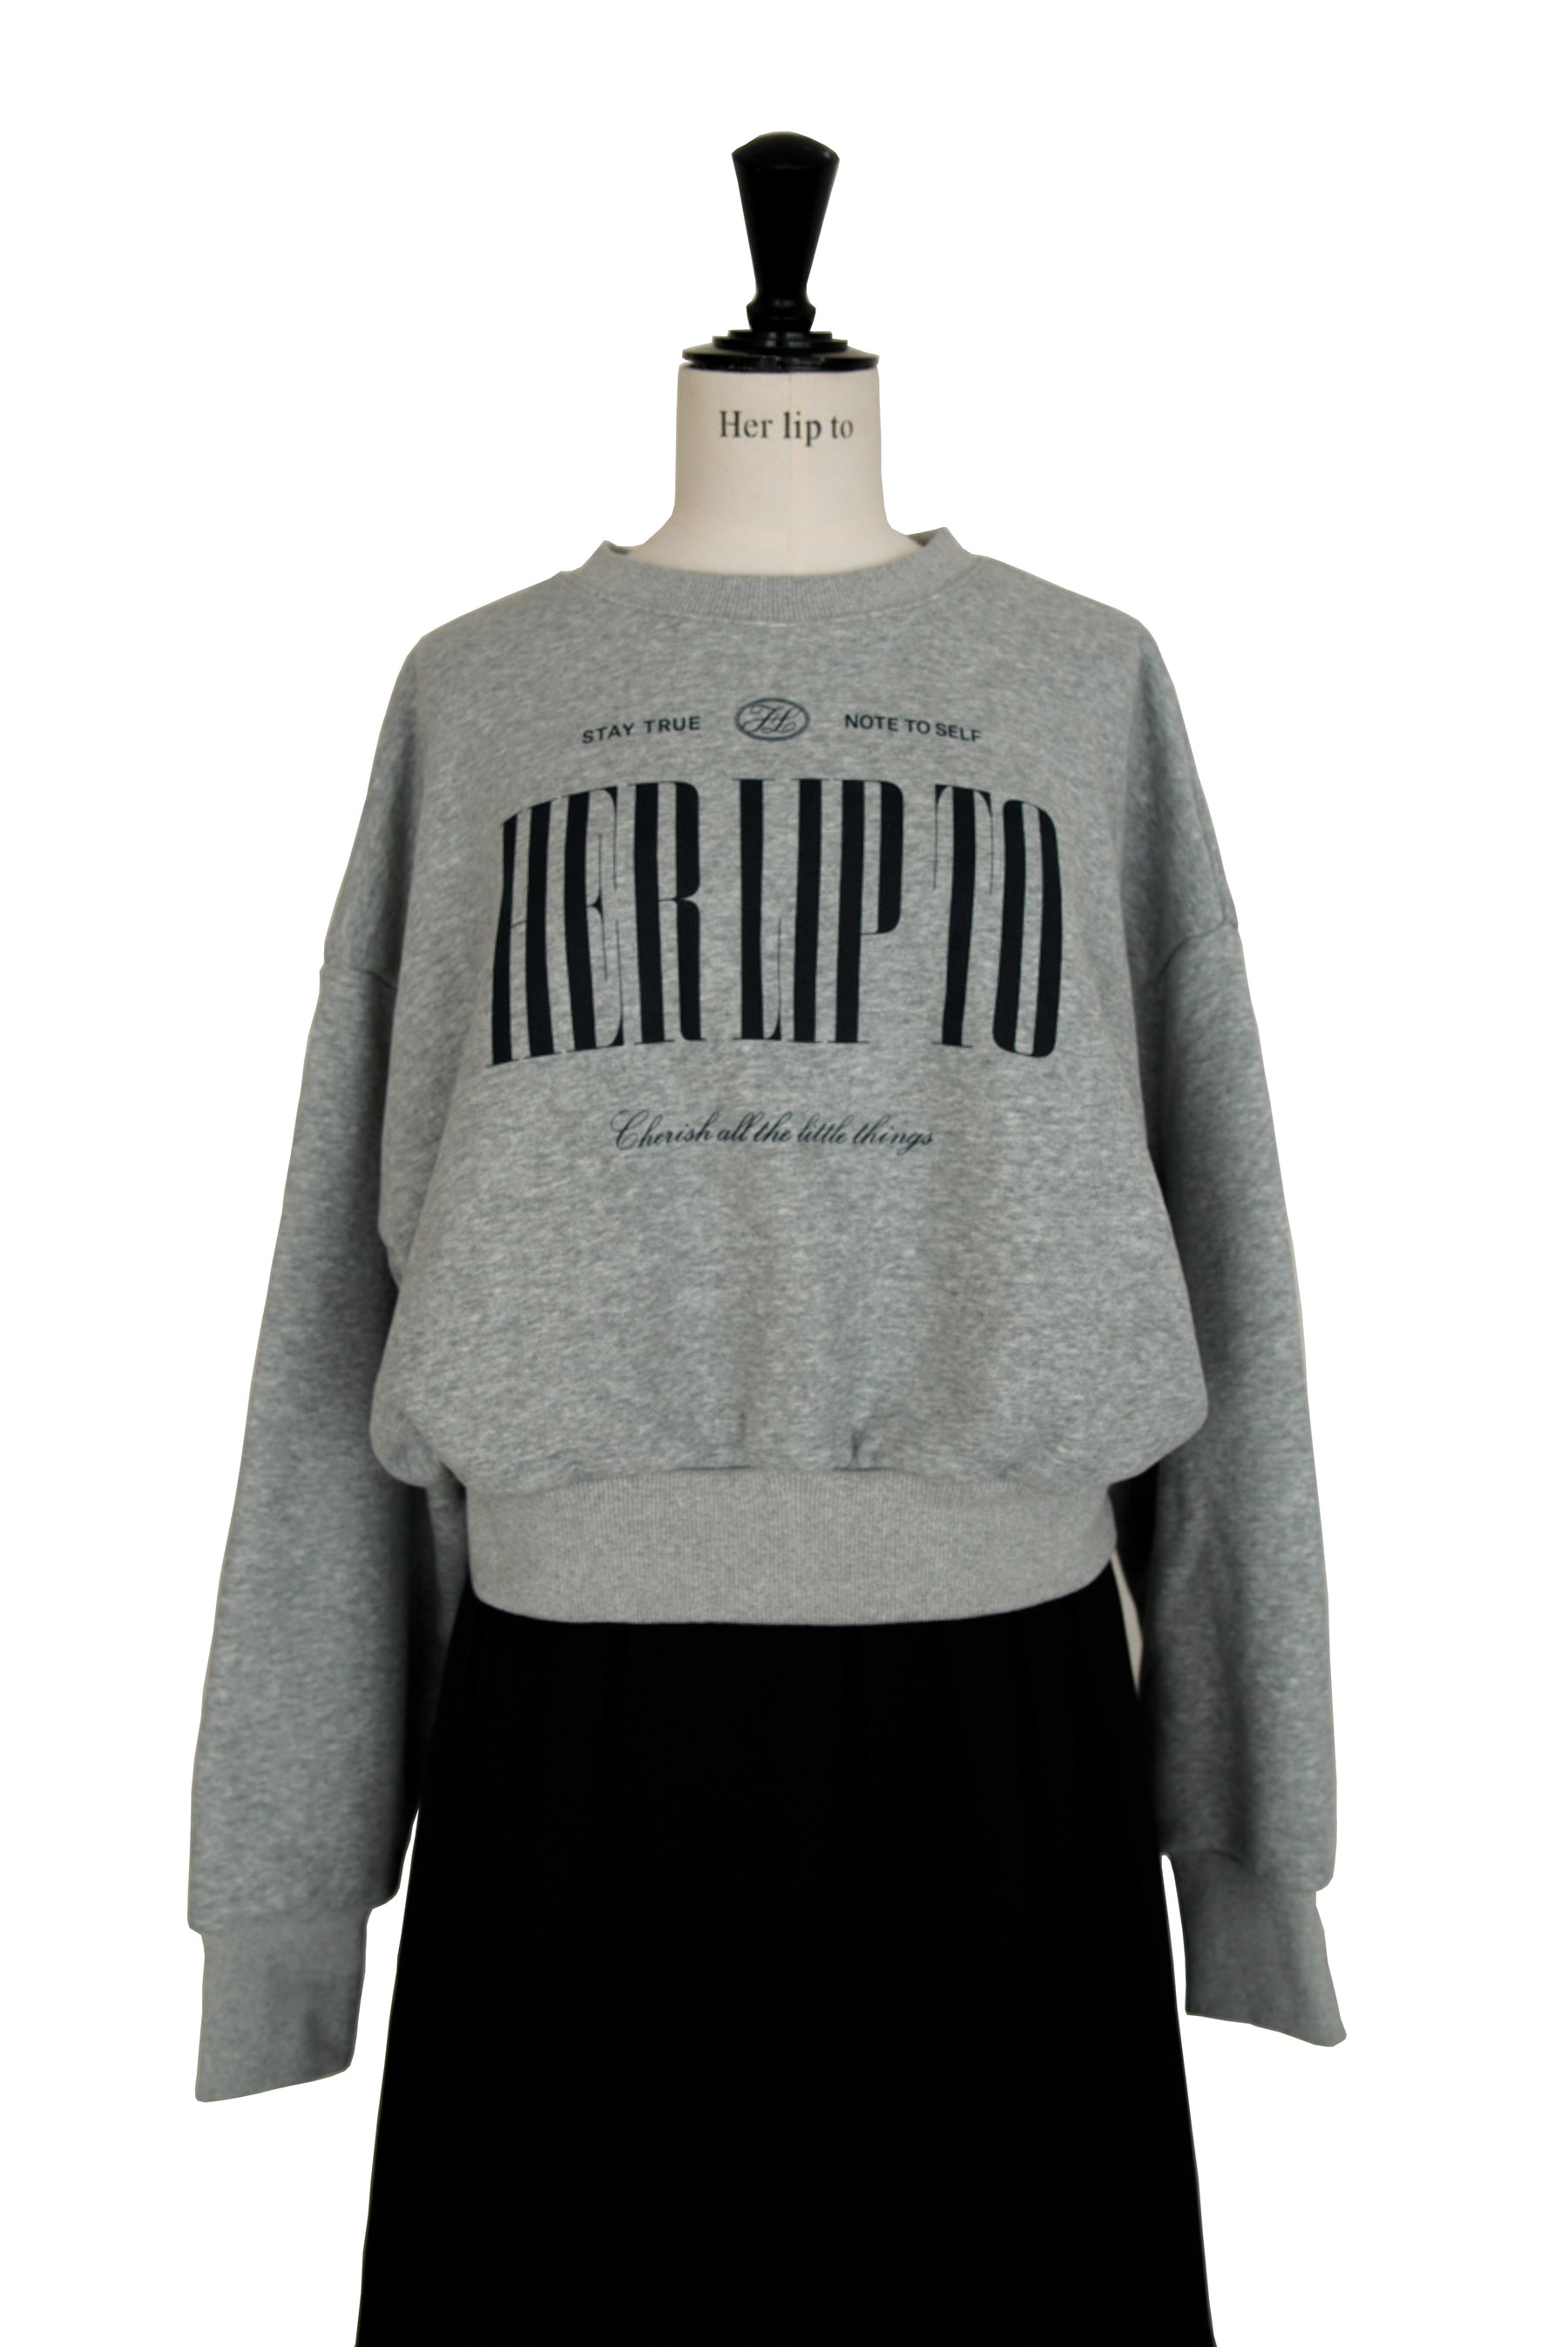 Herlipto Cherish Oversized Sweatshirt